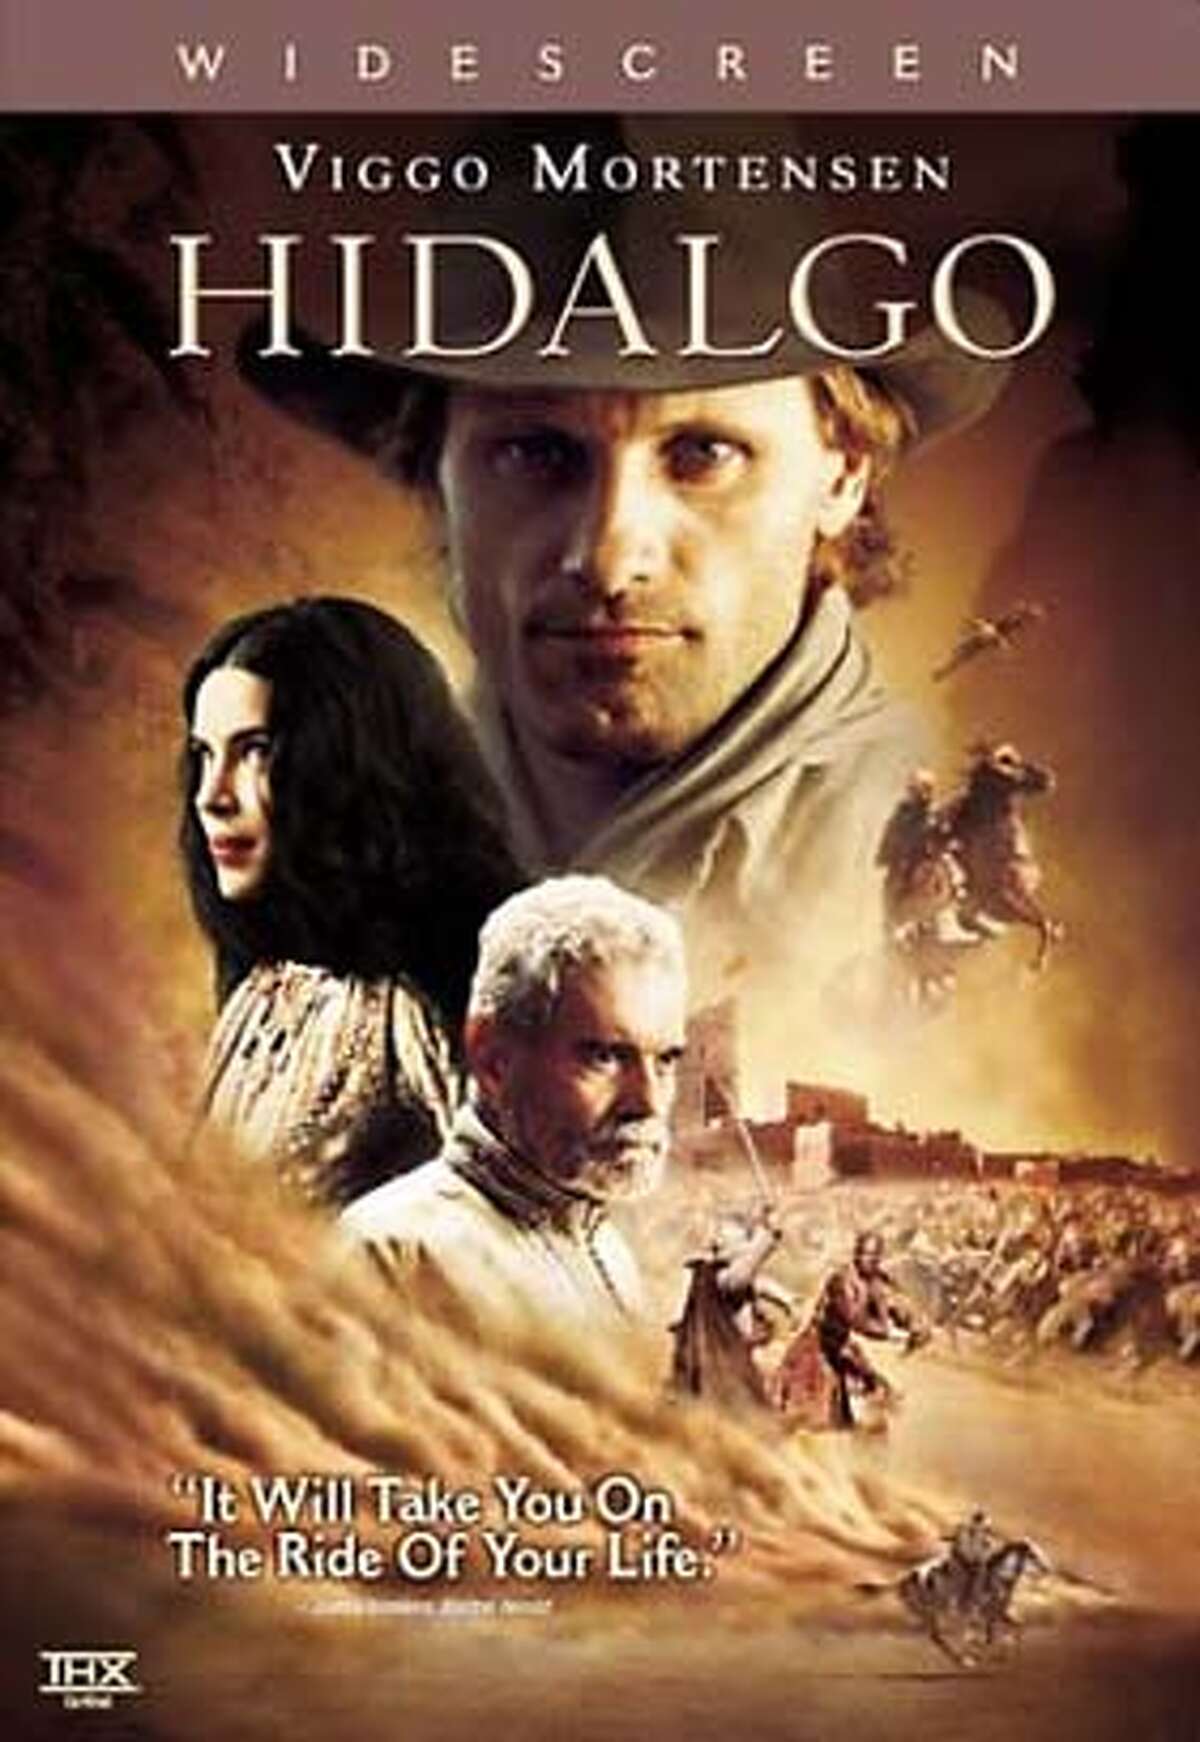 hidalgo.JPG DVD cover of HIDALGO HANDOUT